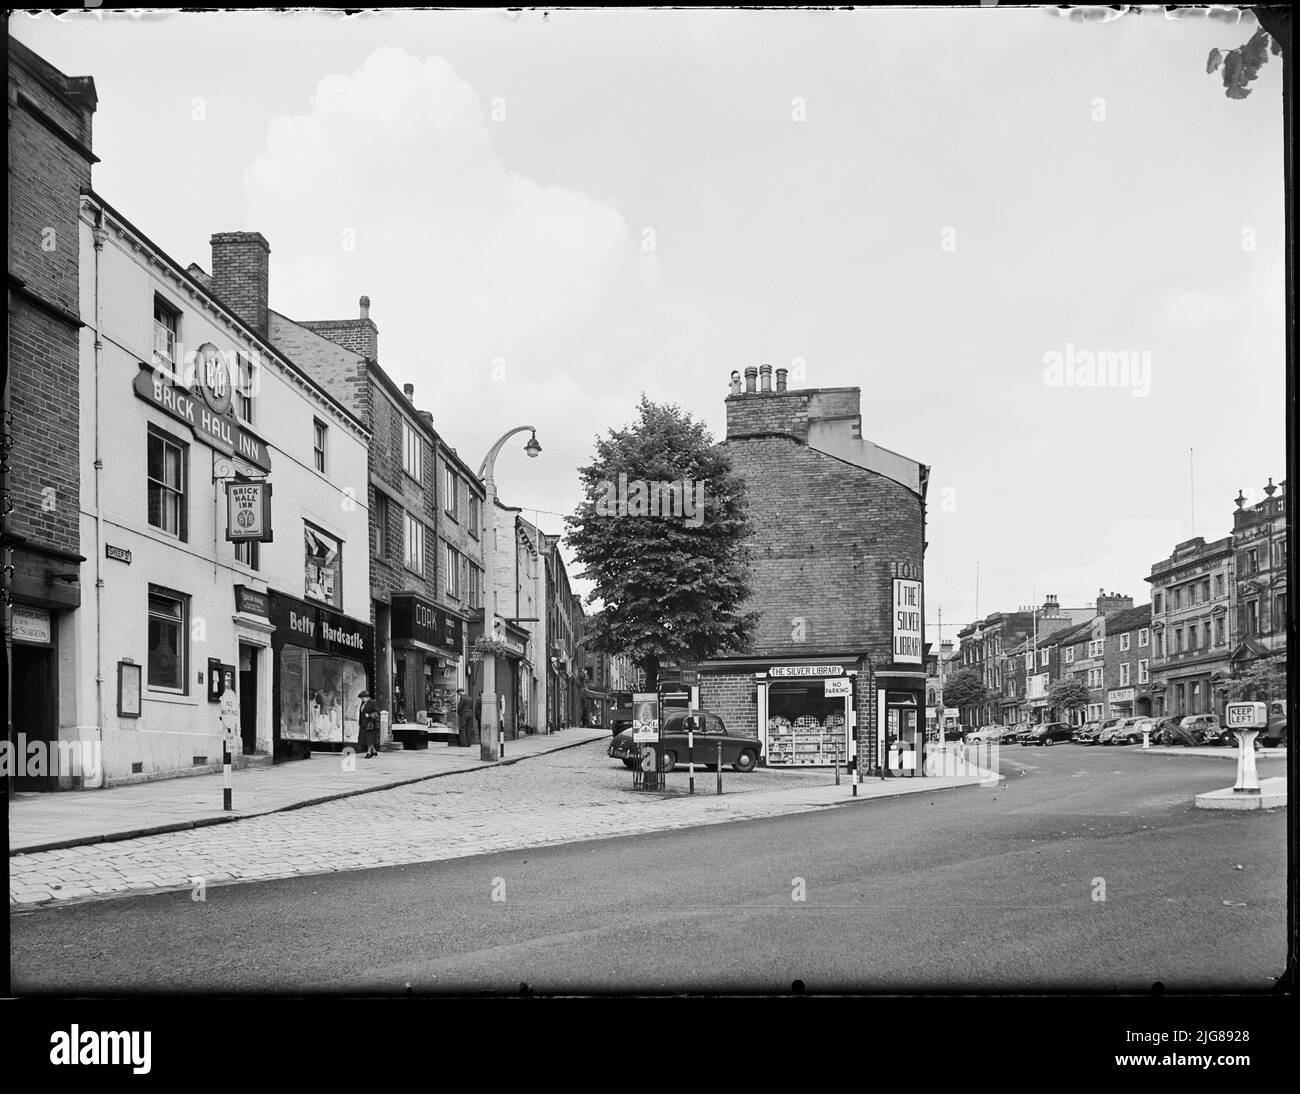 High Street, Skipton, Craven, North Yorkshire, 1957. Vue depuis Caroline Square, vers le nord, montrant les bâtiments à l'extrémité sud de Sheep Street et de High Street. Banque D'Images